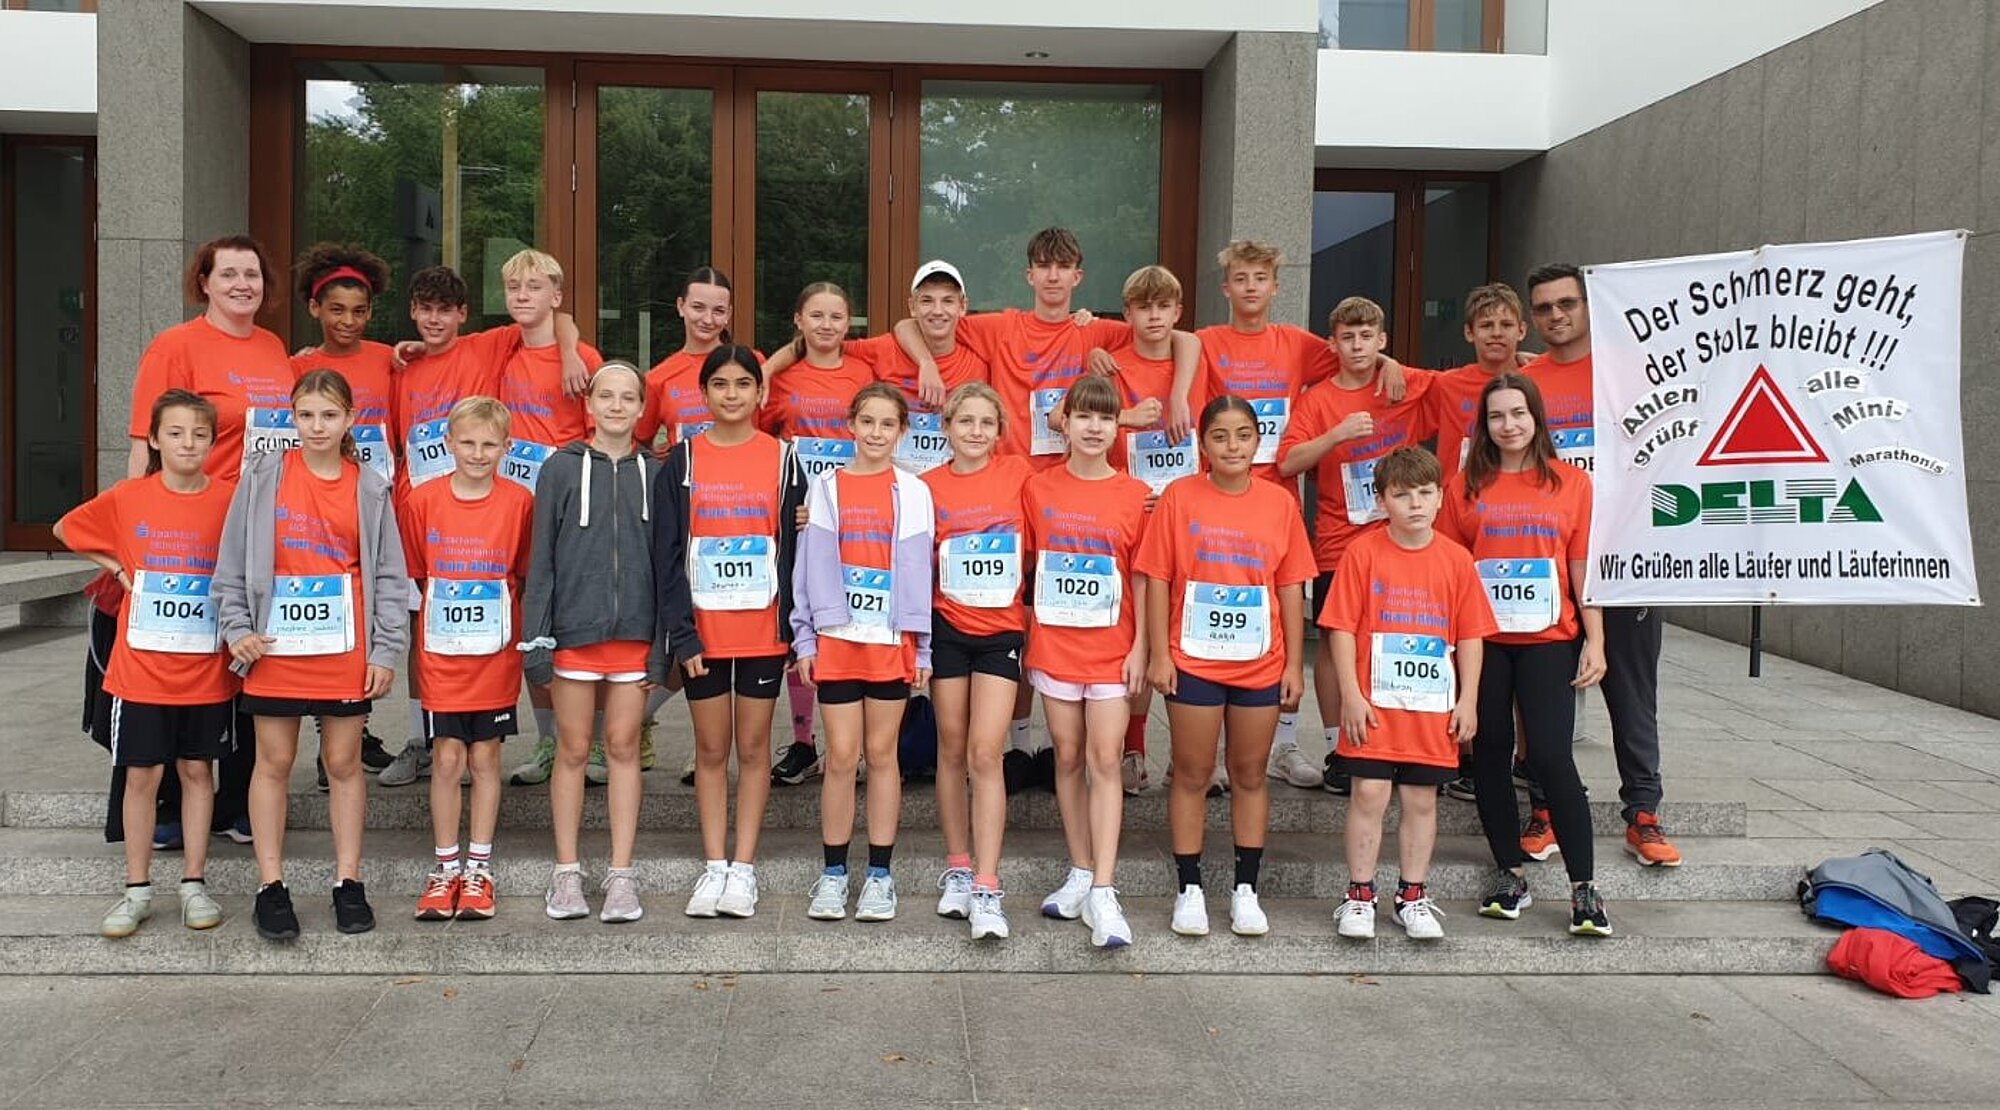 Foto: Gruppenbild mit allen Teilnehmern des Mini-Marathons aus Ahlen